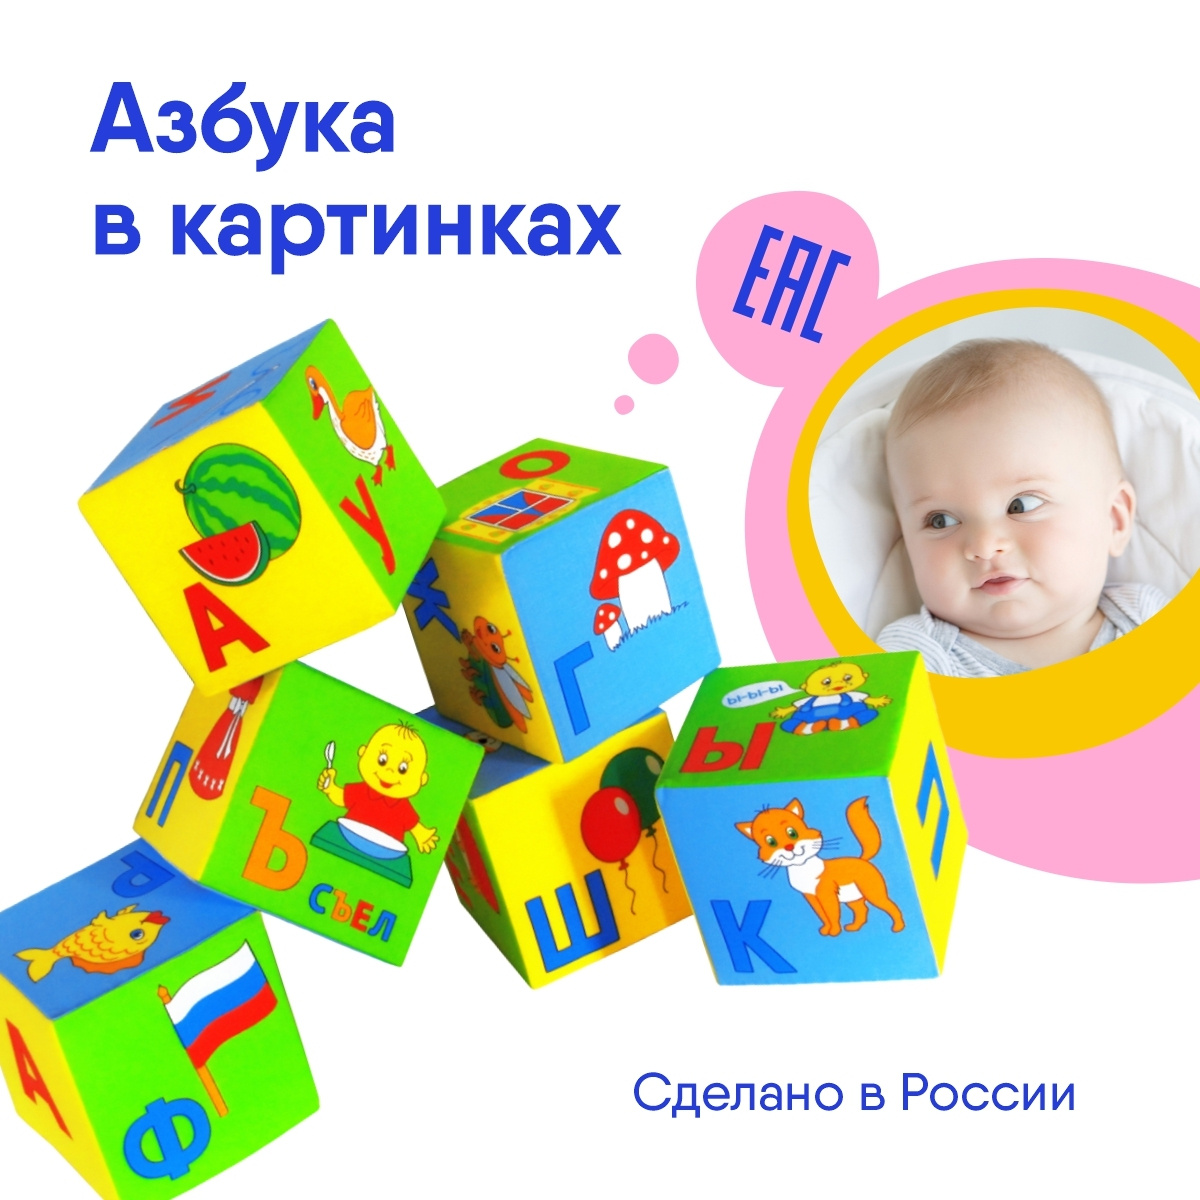 Мякиши Набор из 6 мягких развивающих кубиков Азбука в картинках для малышей Россия 0+  #1